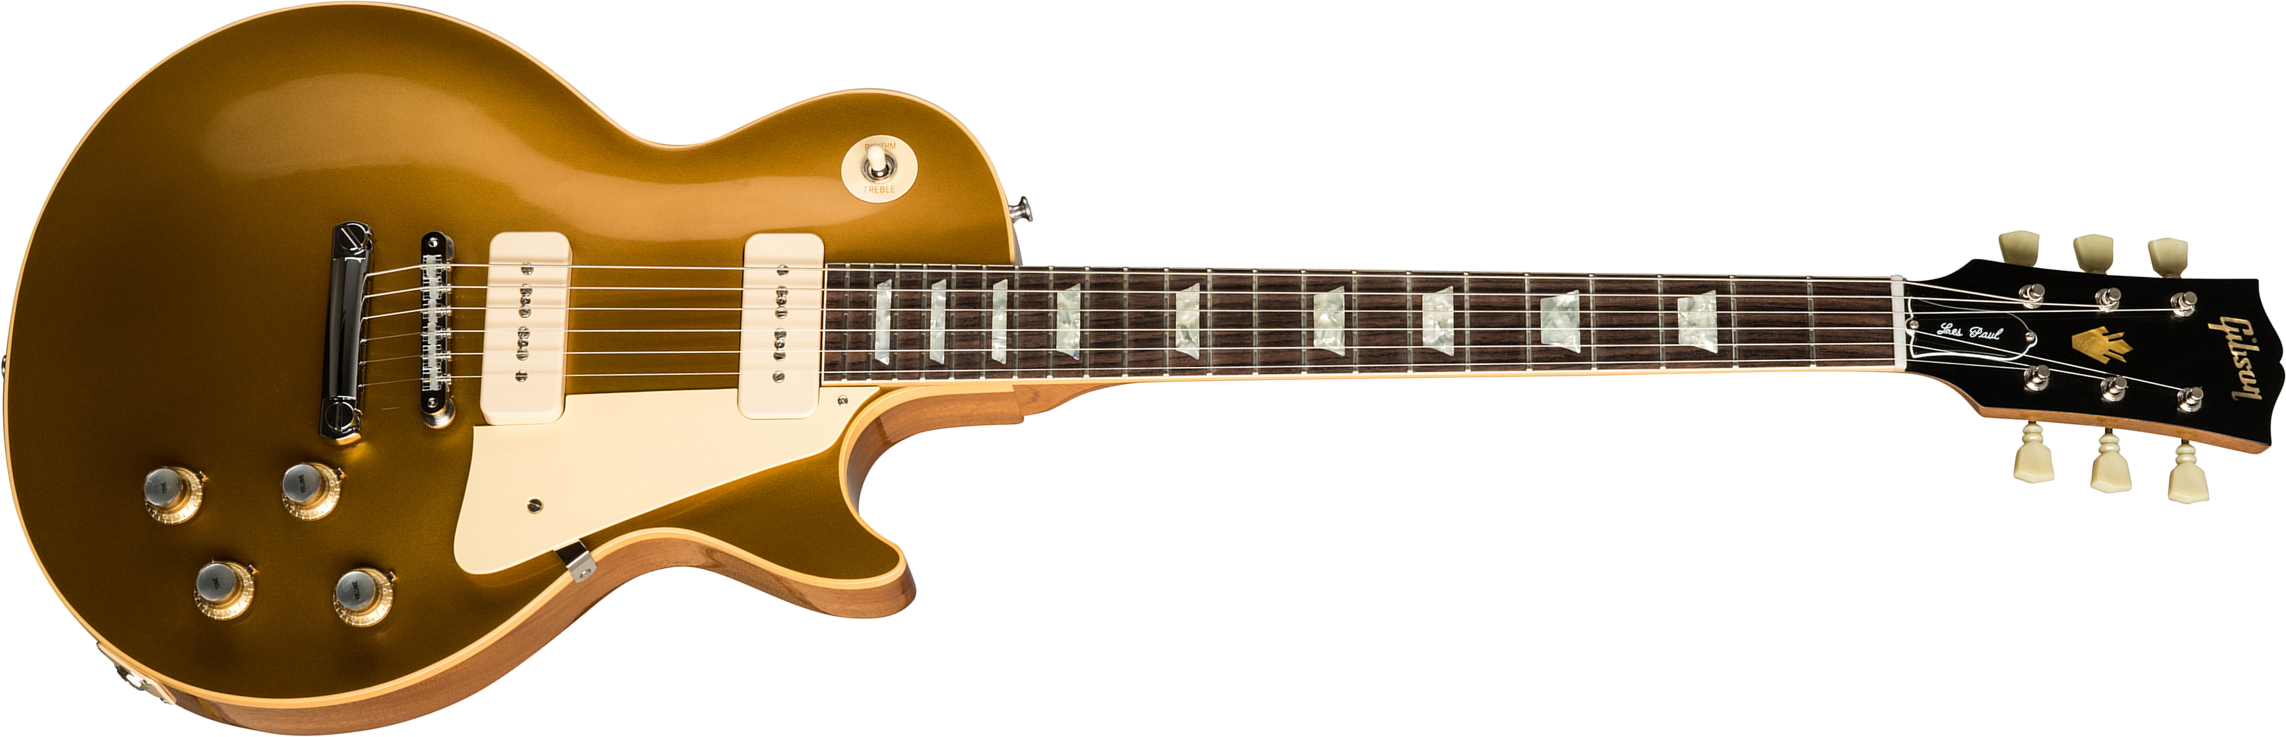 Gibson Custom Shop Les Paul Goldtop 1968 Reissue 2019 2p90 Ht Rw - 60s Gold - Guitarra eléctrica de corte único. - Main picture